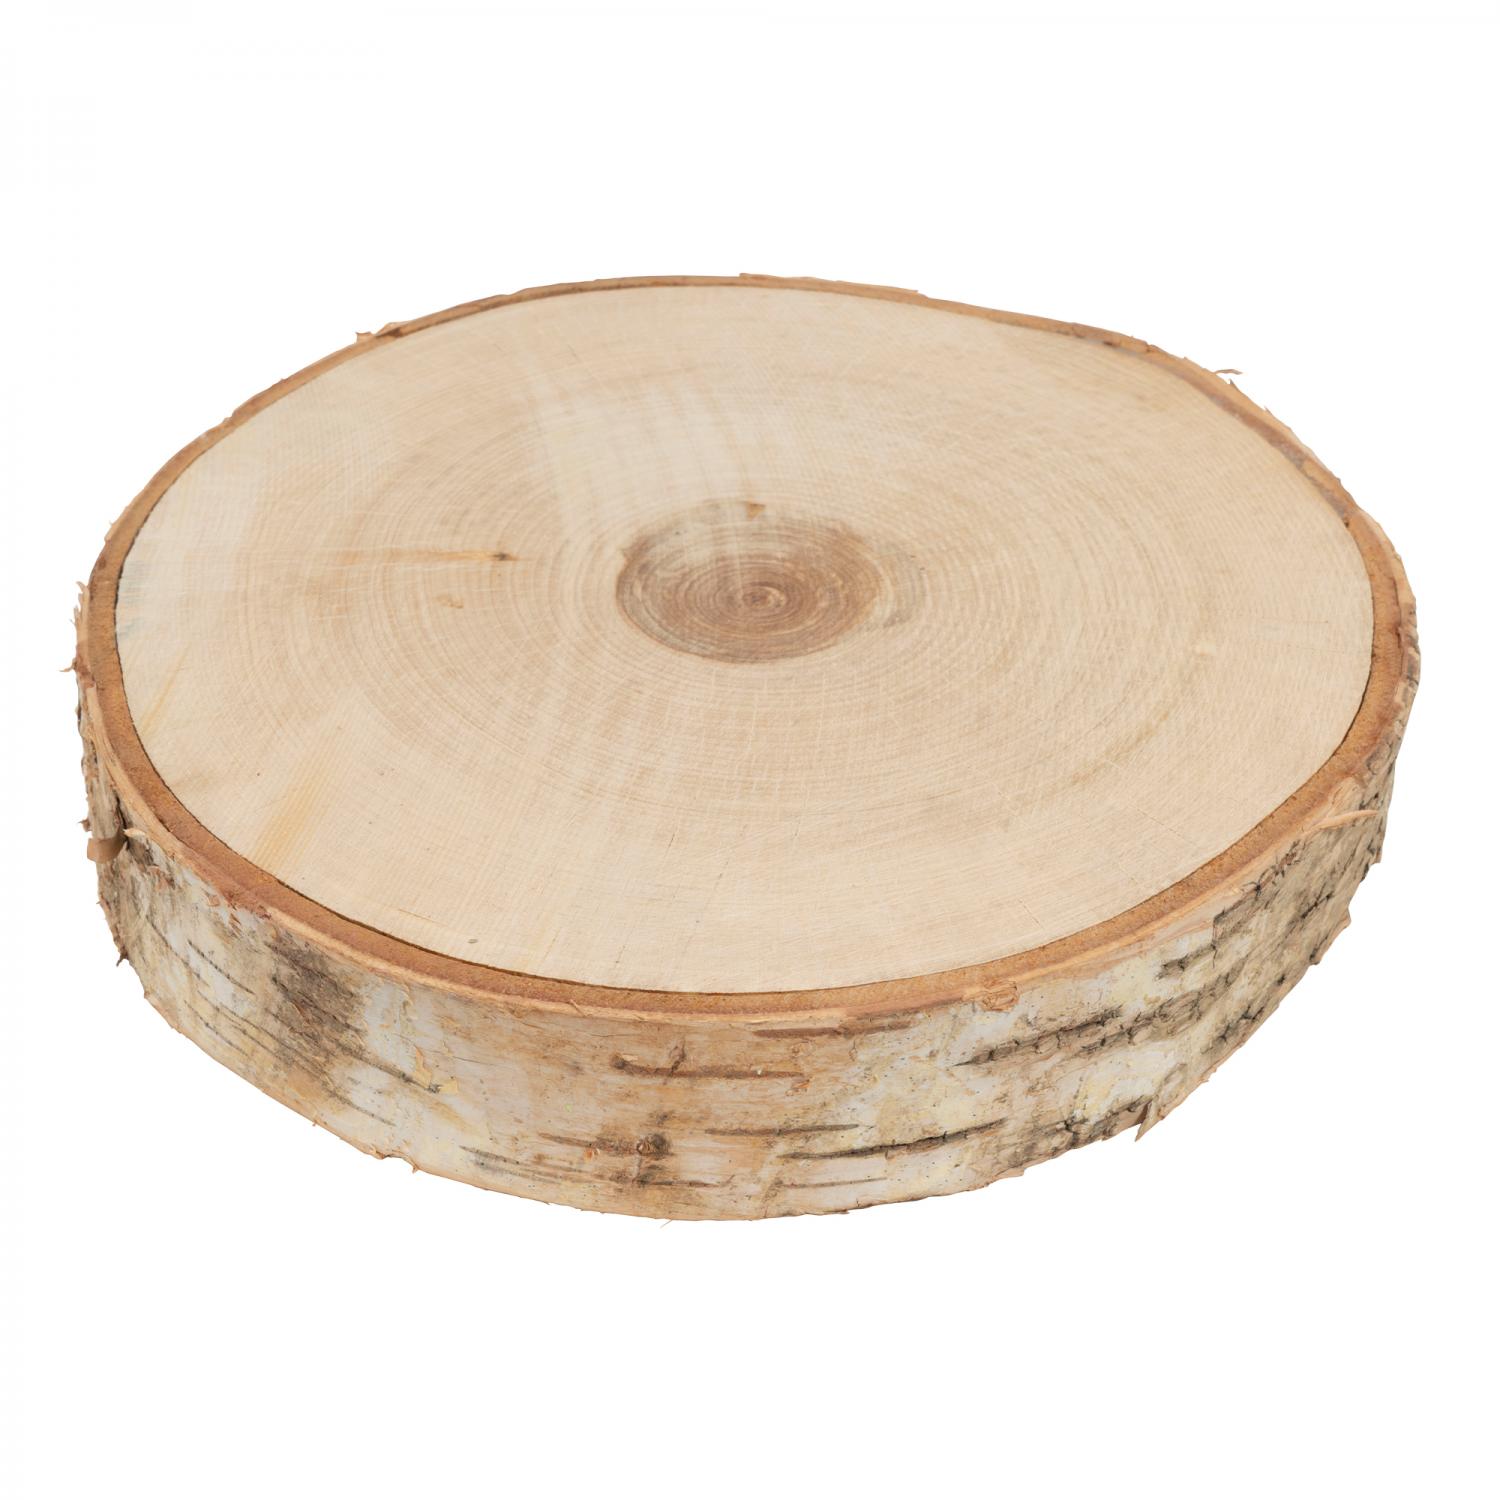 Natural Large Wood Slice - 12